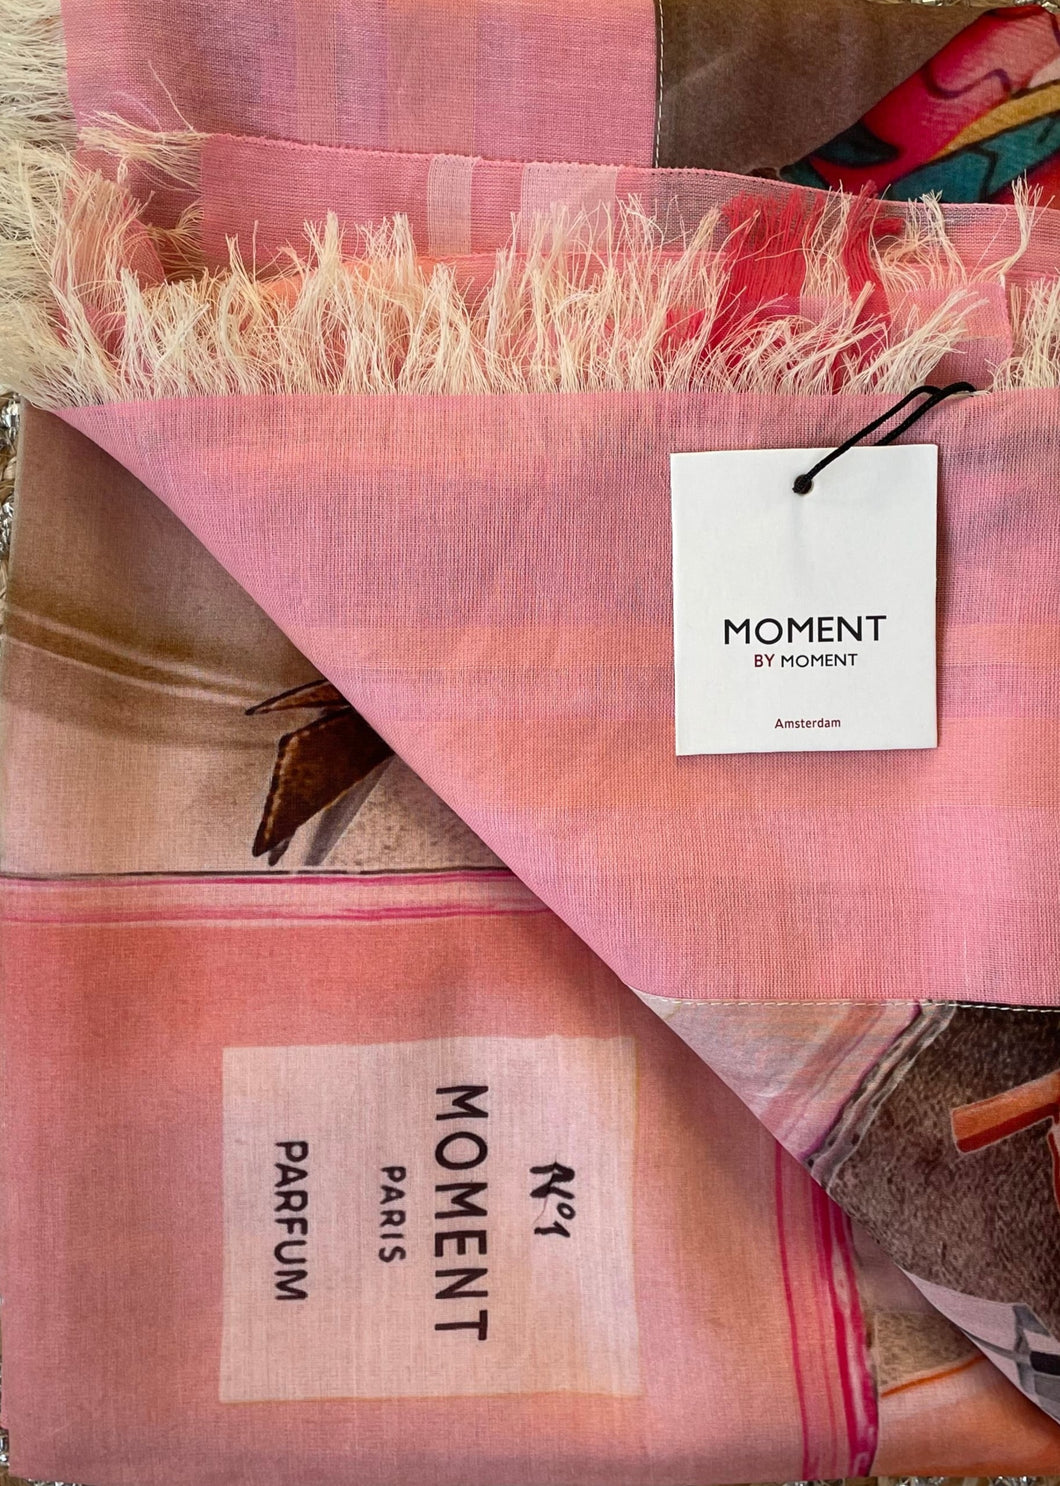 Roze Sjaal van Moment by Moment in roze, multicolor. Sjaal item referentie 21.116-22 in de kleur 502 Pink van de voorjaars collectie. Met deze sjaal ben je helemaal klaar voor het voorjaar.